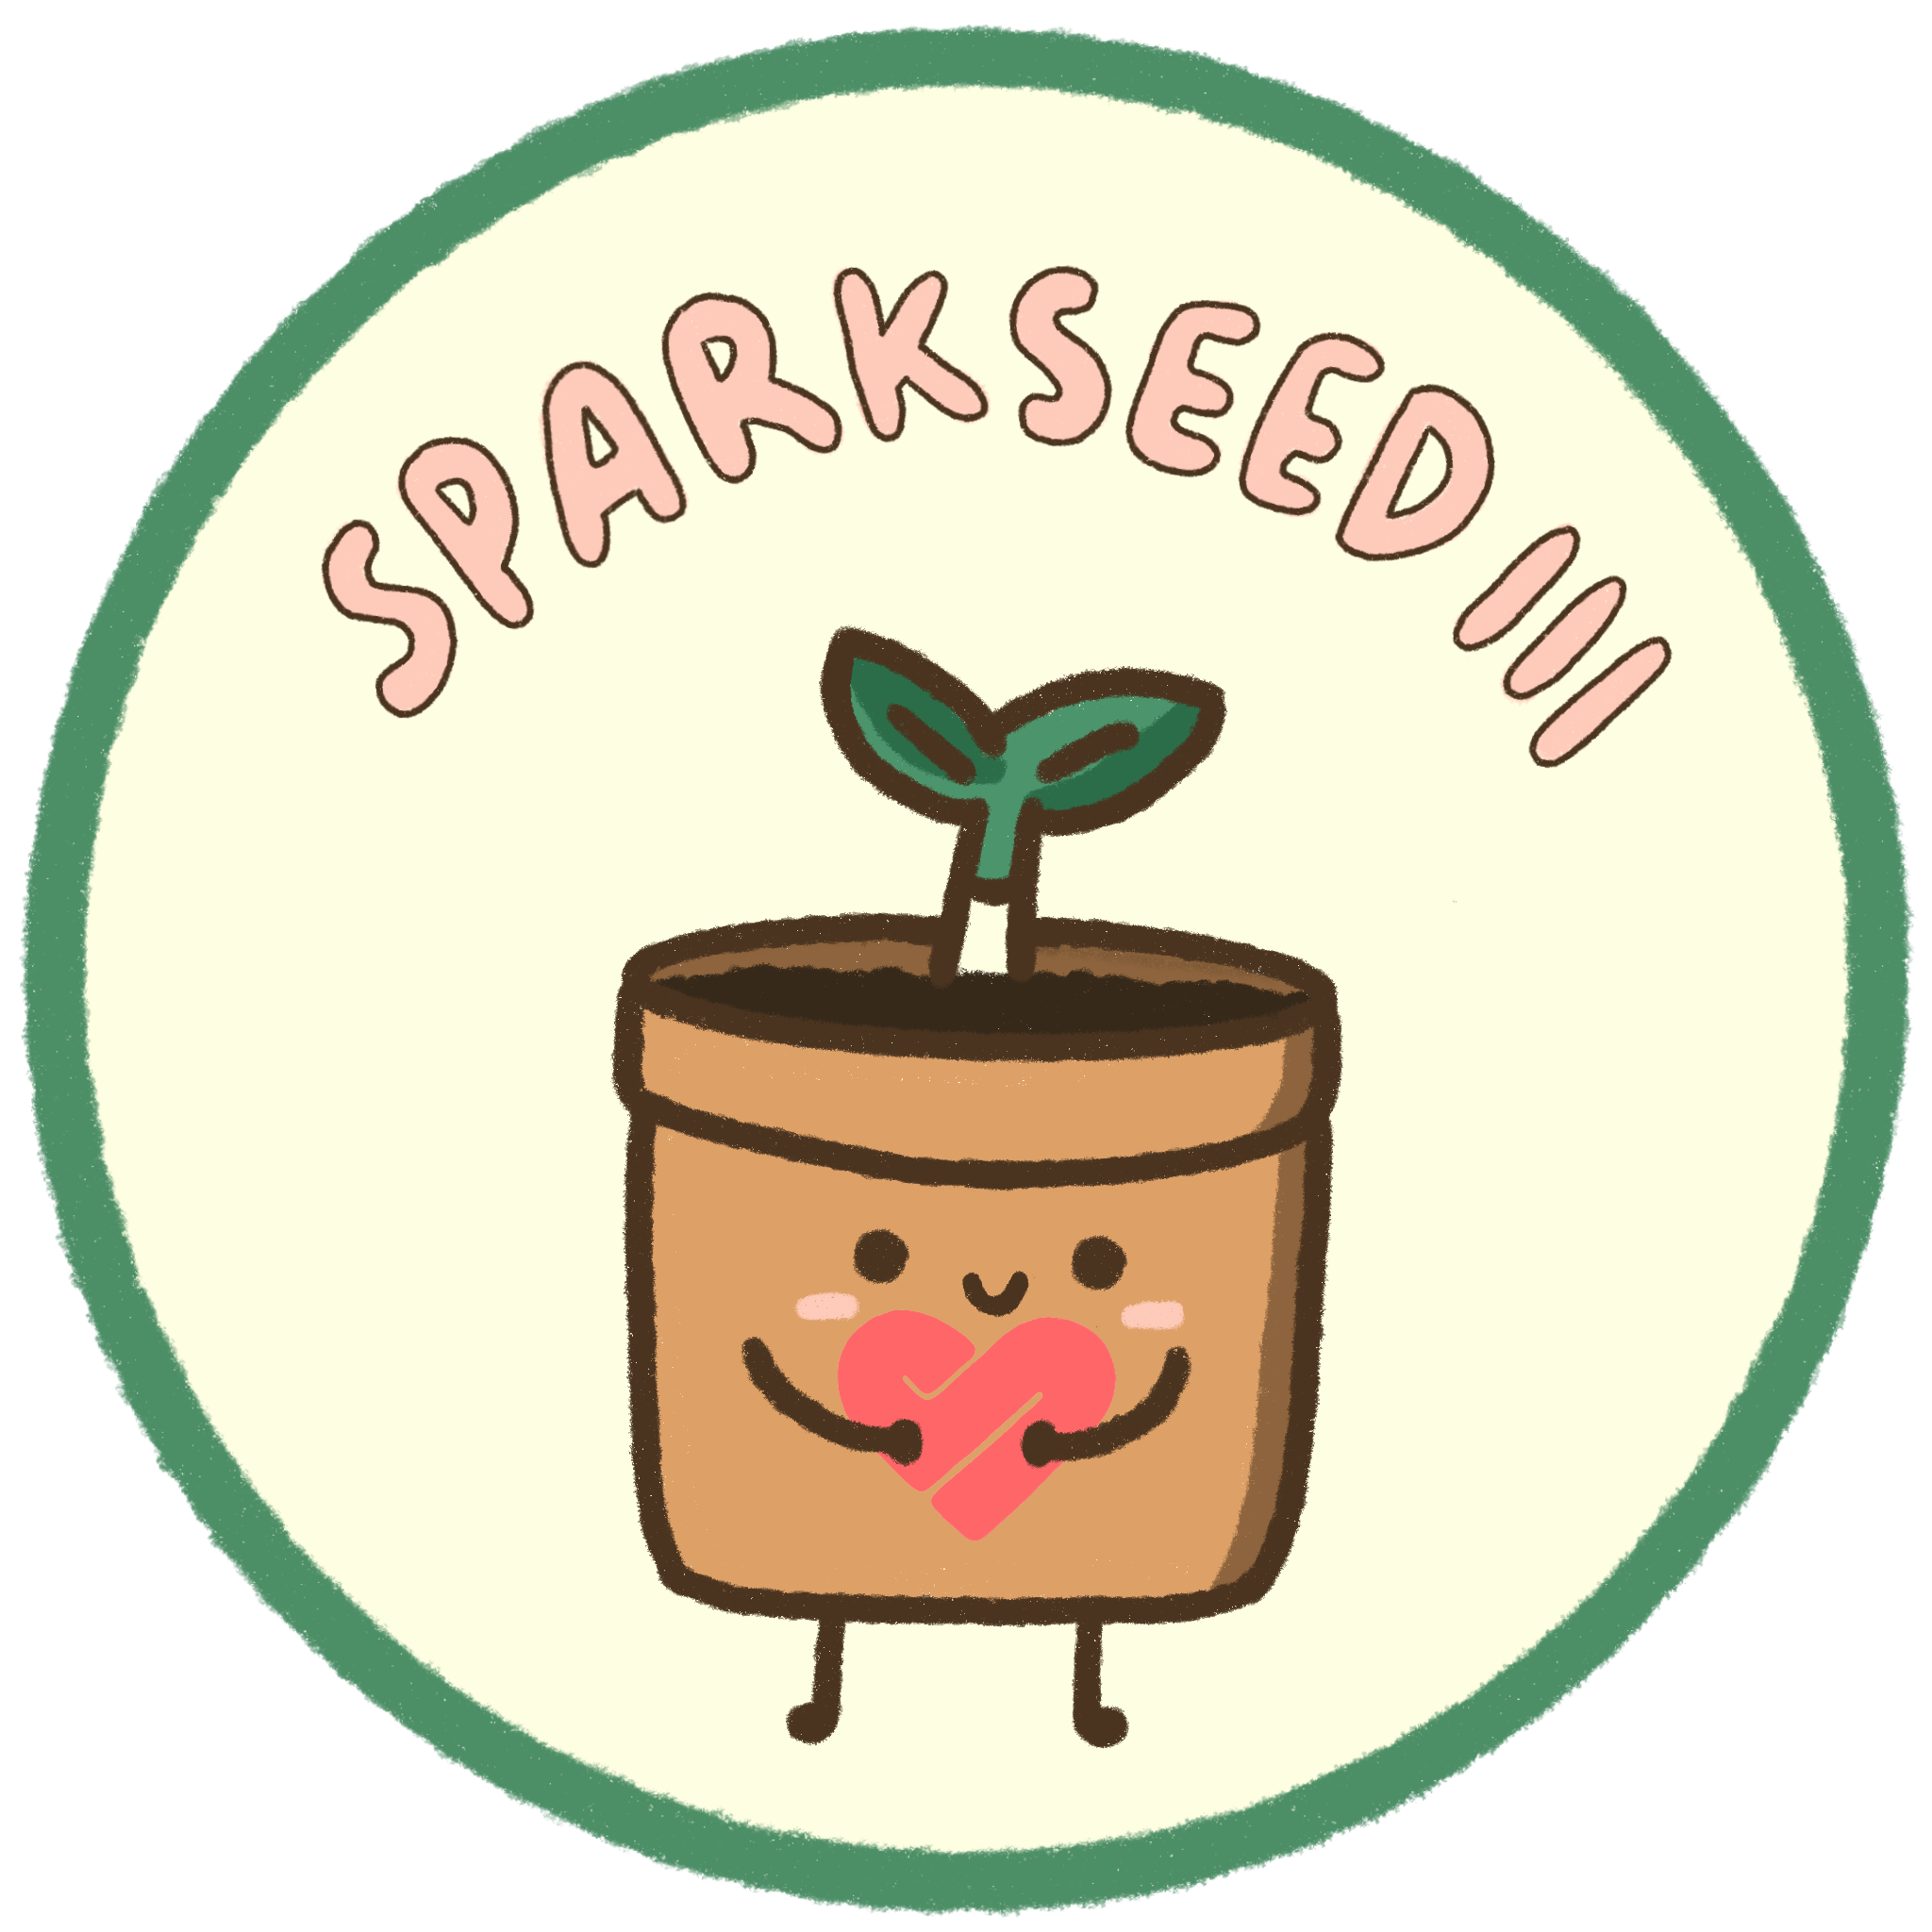 Sparkseed III Logo